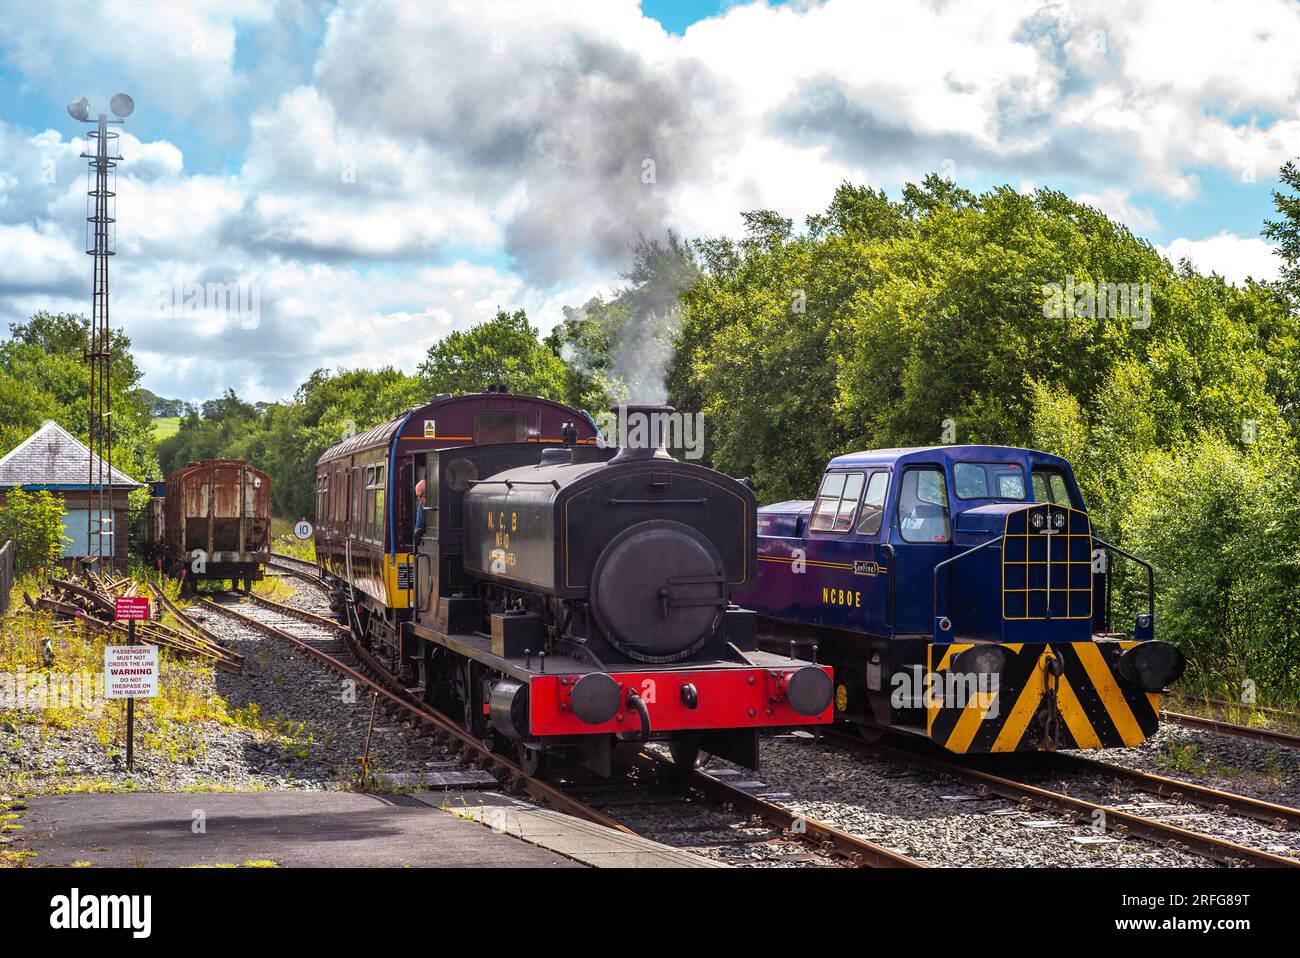 Doon Valley Railway locomotive à vapeur et wagon approchant de la gare de Dunskin Banque D'Images